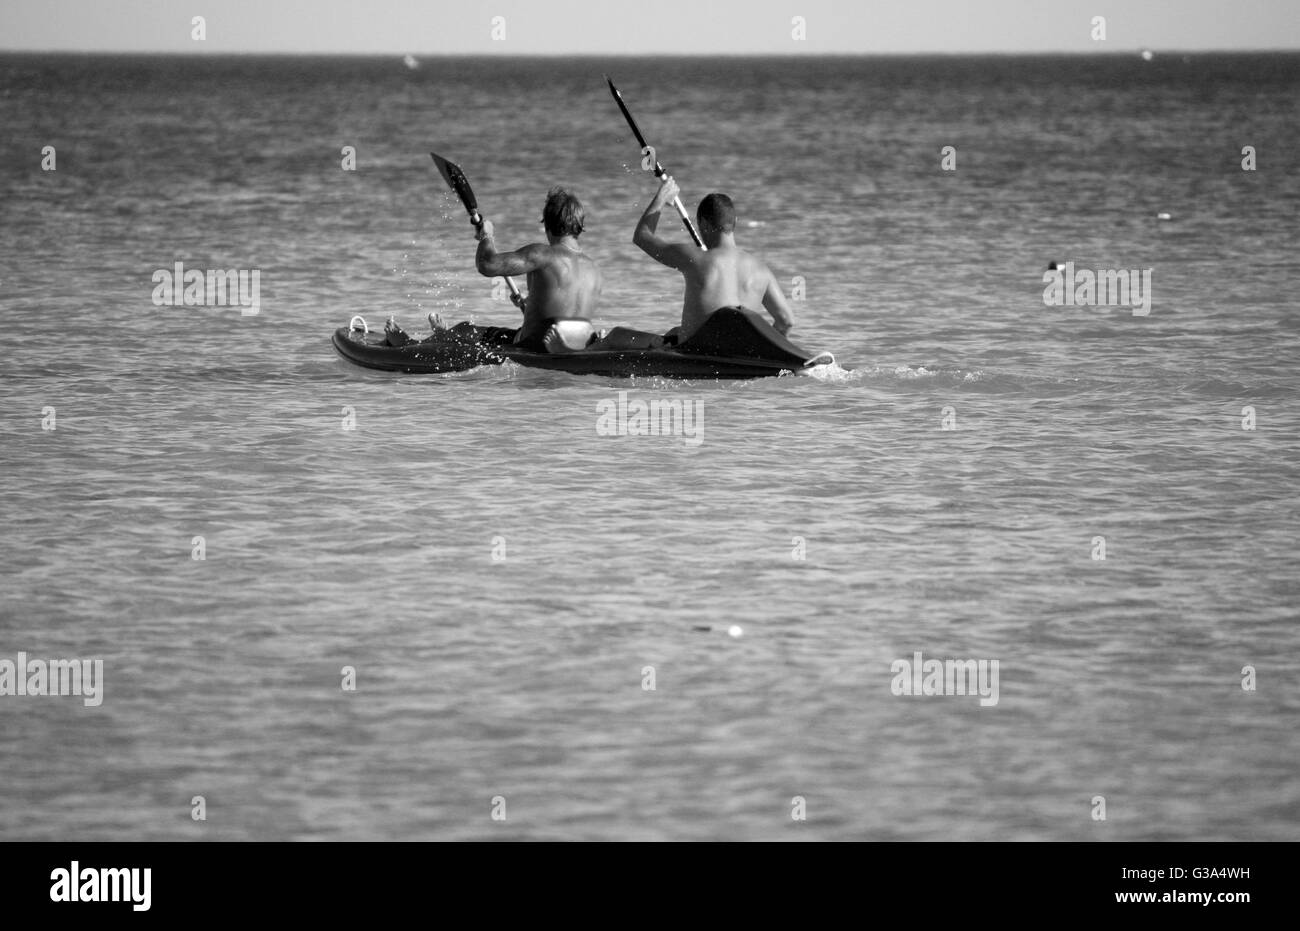 Deux gars canoing dans la mer Banque D'Images